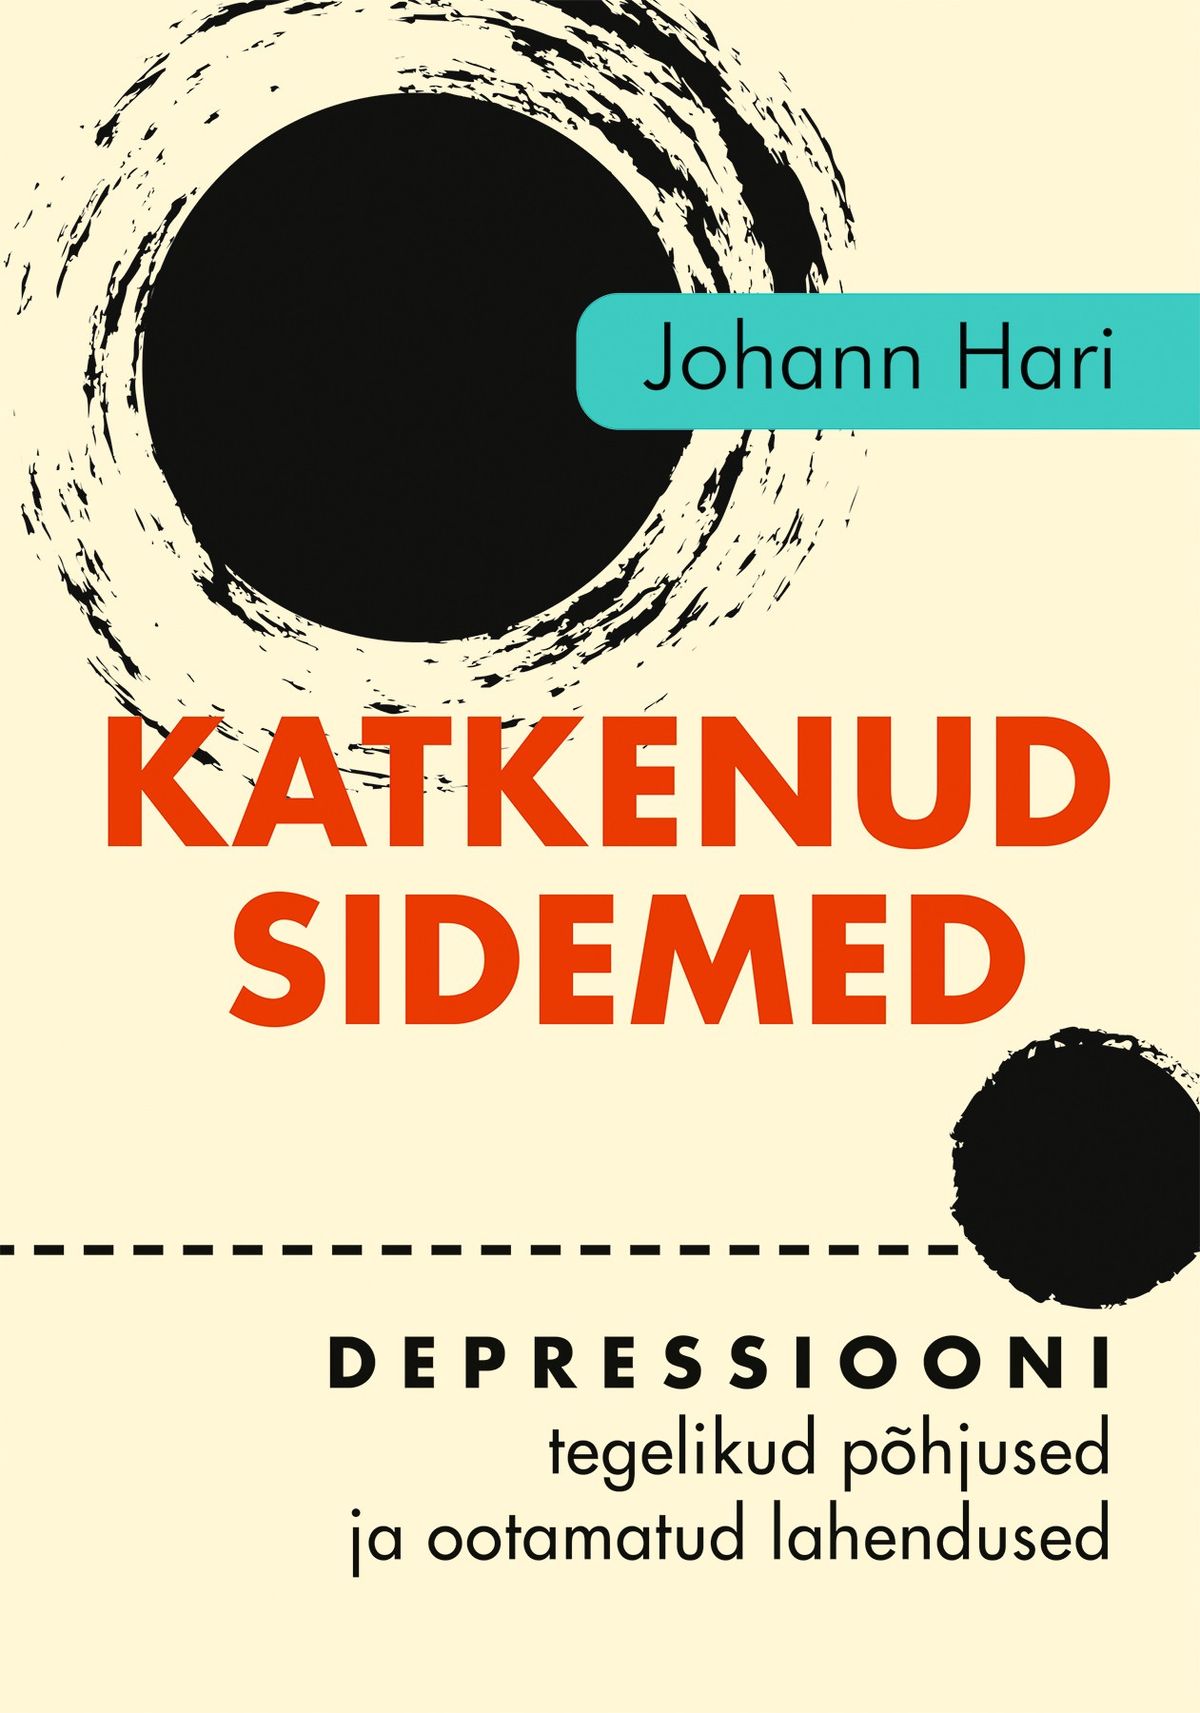 Johann Hari, «Katkenud sidemed. Depressiooni tegelikud põhjused ja ootamatud lahendused».